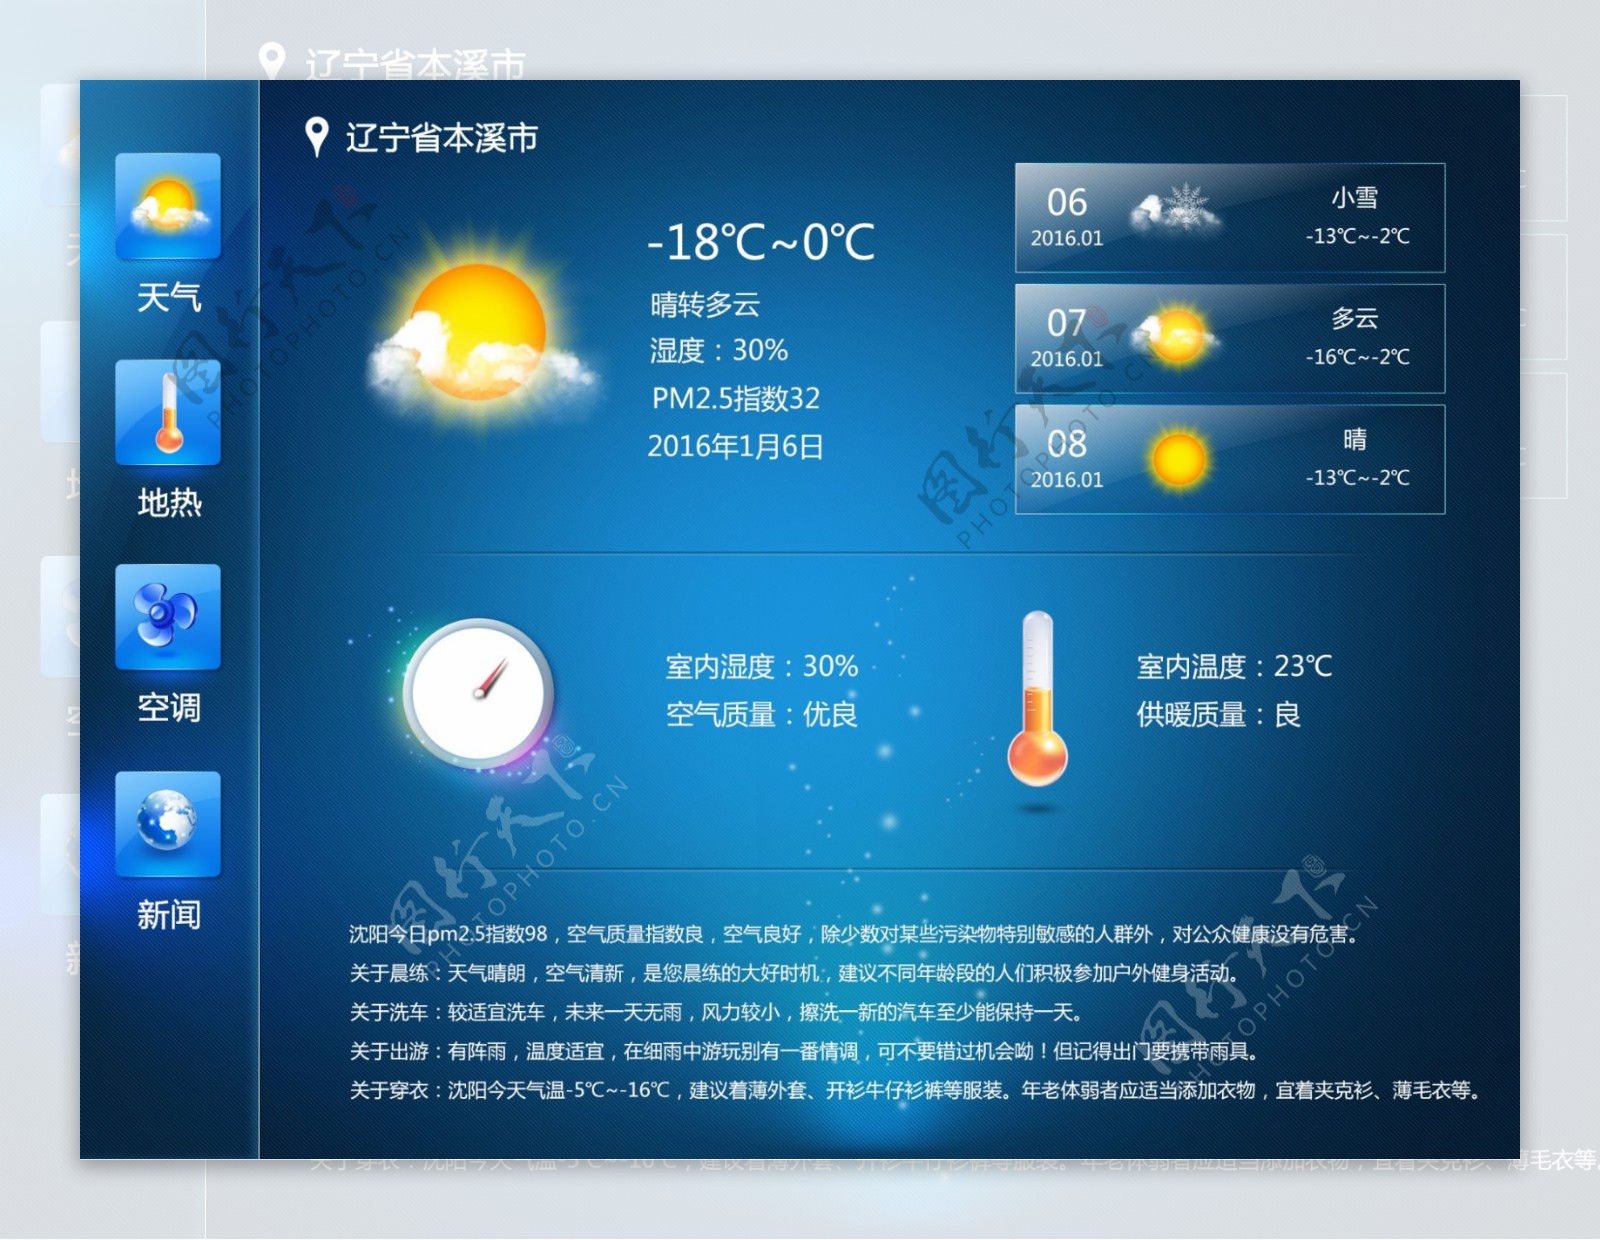 平板天气预报及室内温度管理系统界面